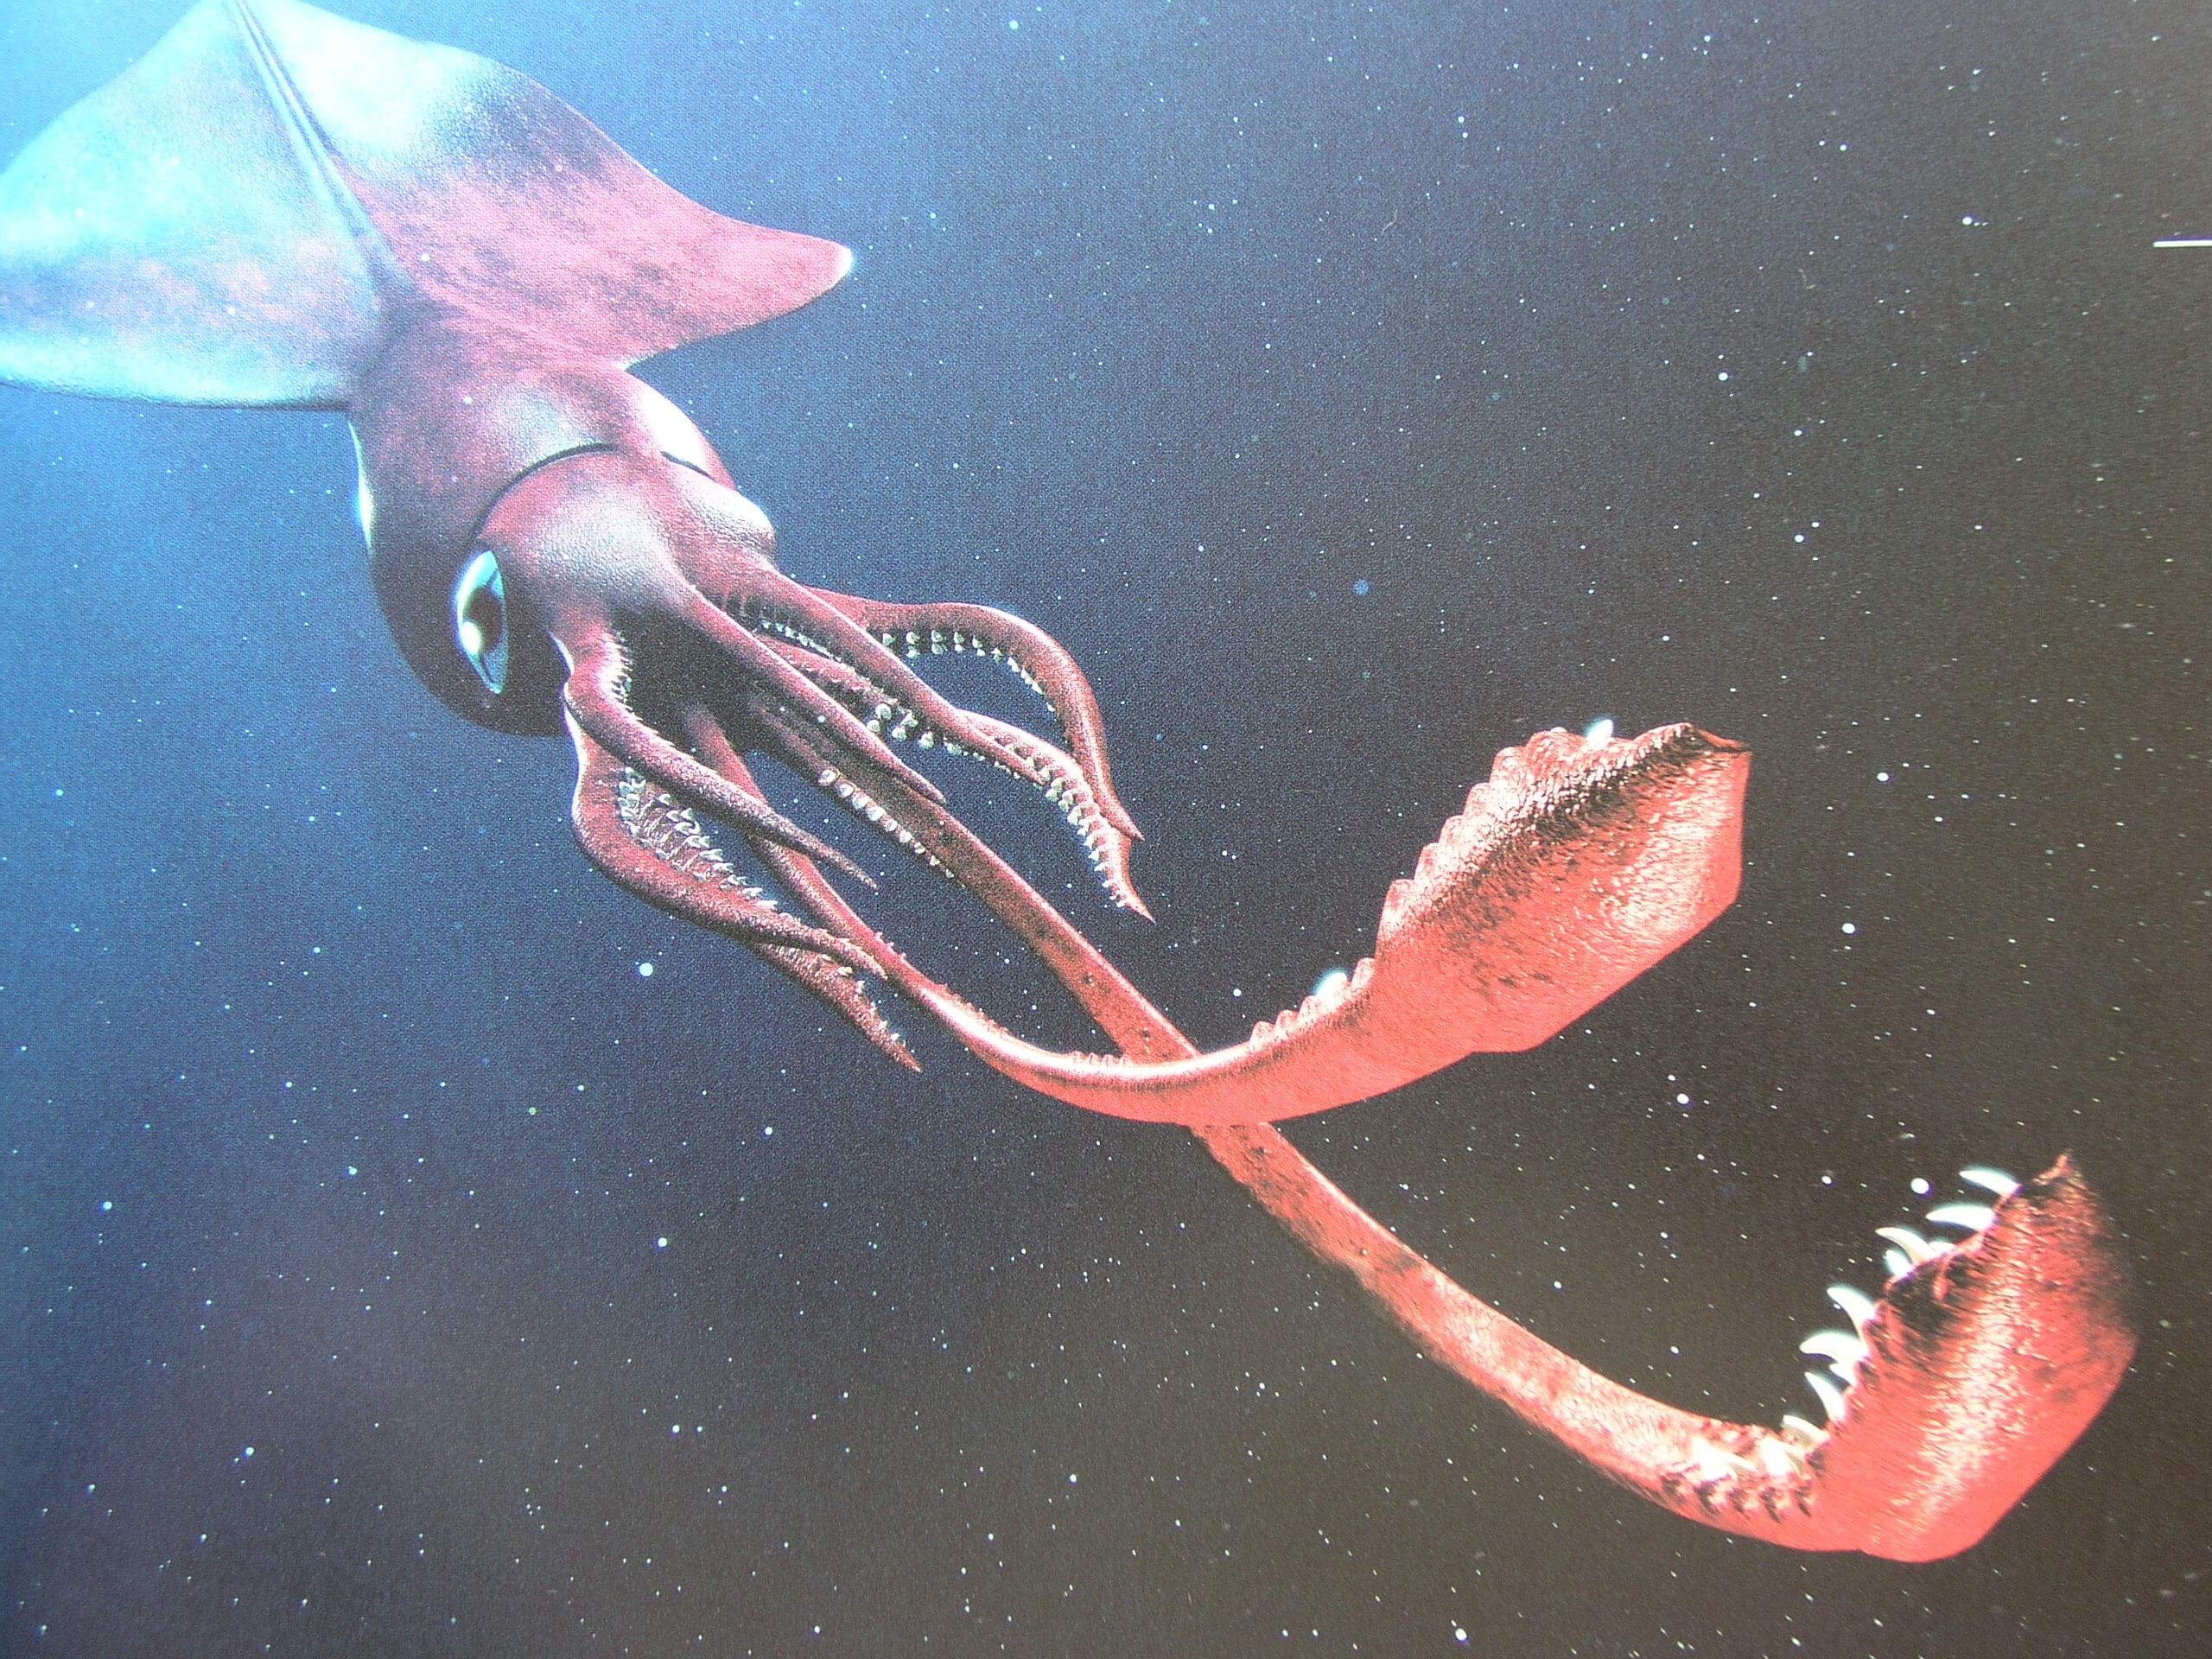 深海生物 ダイオウホウズキイカ とは 生態 特徴を徹底解説 深海の庭を歩く ぶらぶらラブカ